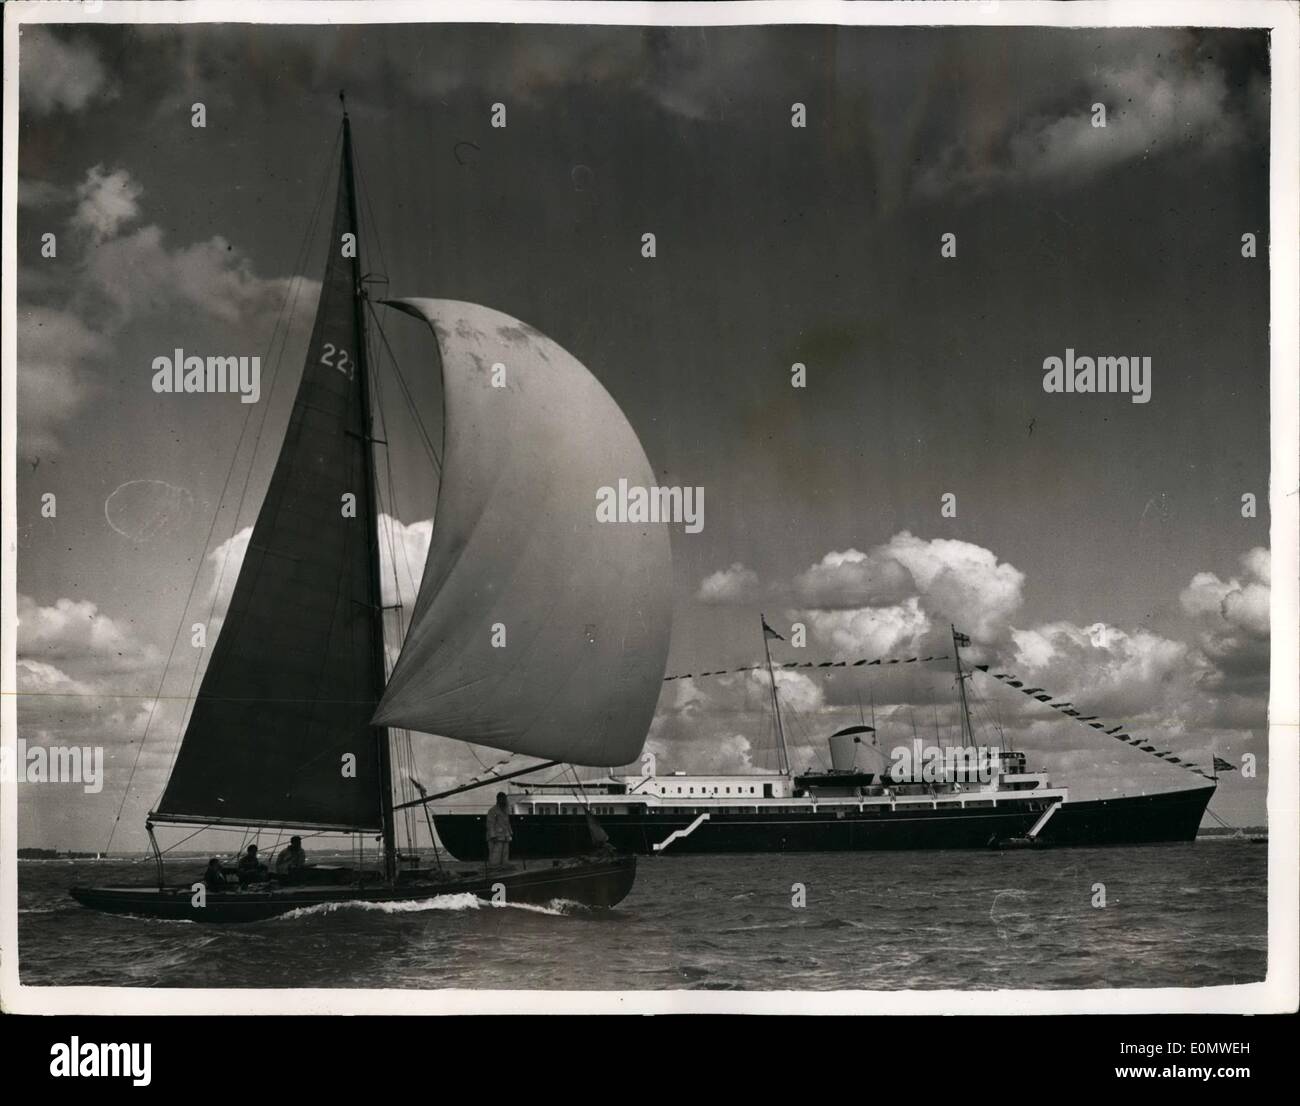 Lug. 07, 1956 - Apertura del Cowes Yachting settimana. Yacht dei sei classe di Misuratore visto come passano il Royal Yacht Britannia nel Solent - durante la famosa Cowes Yachting settimana. Foto Stock